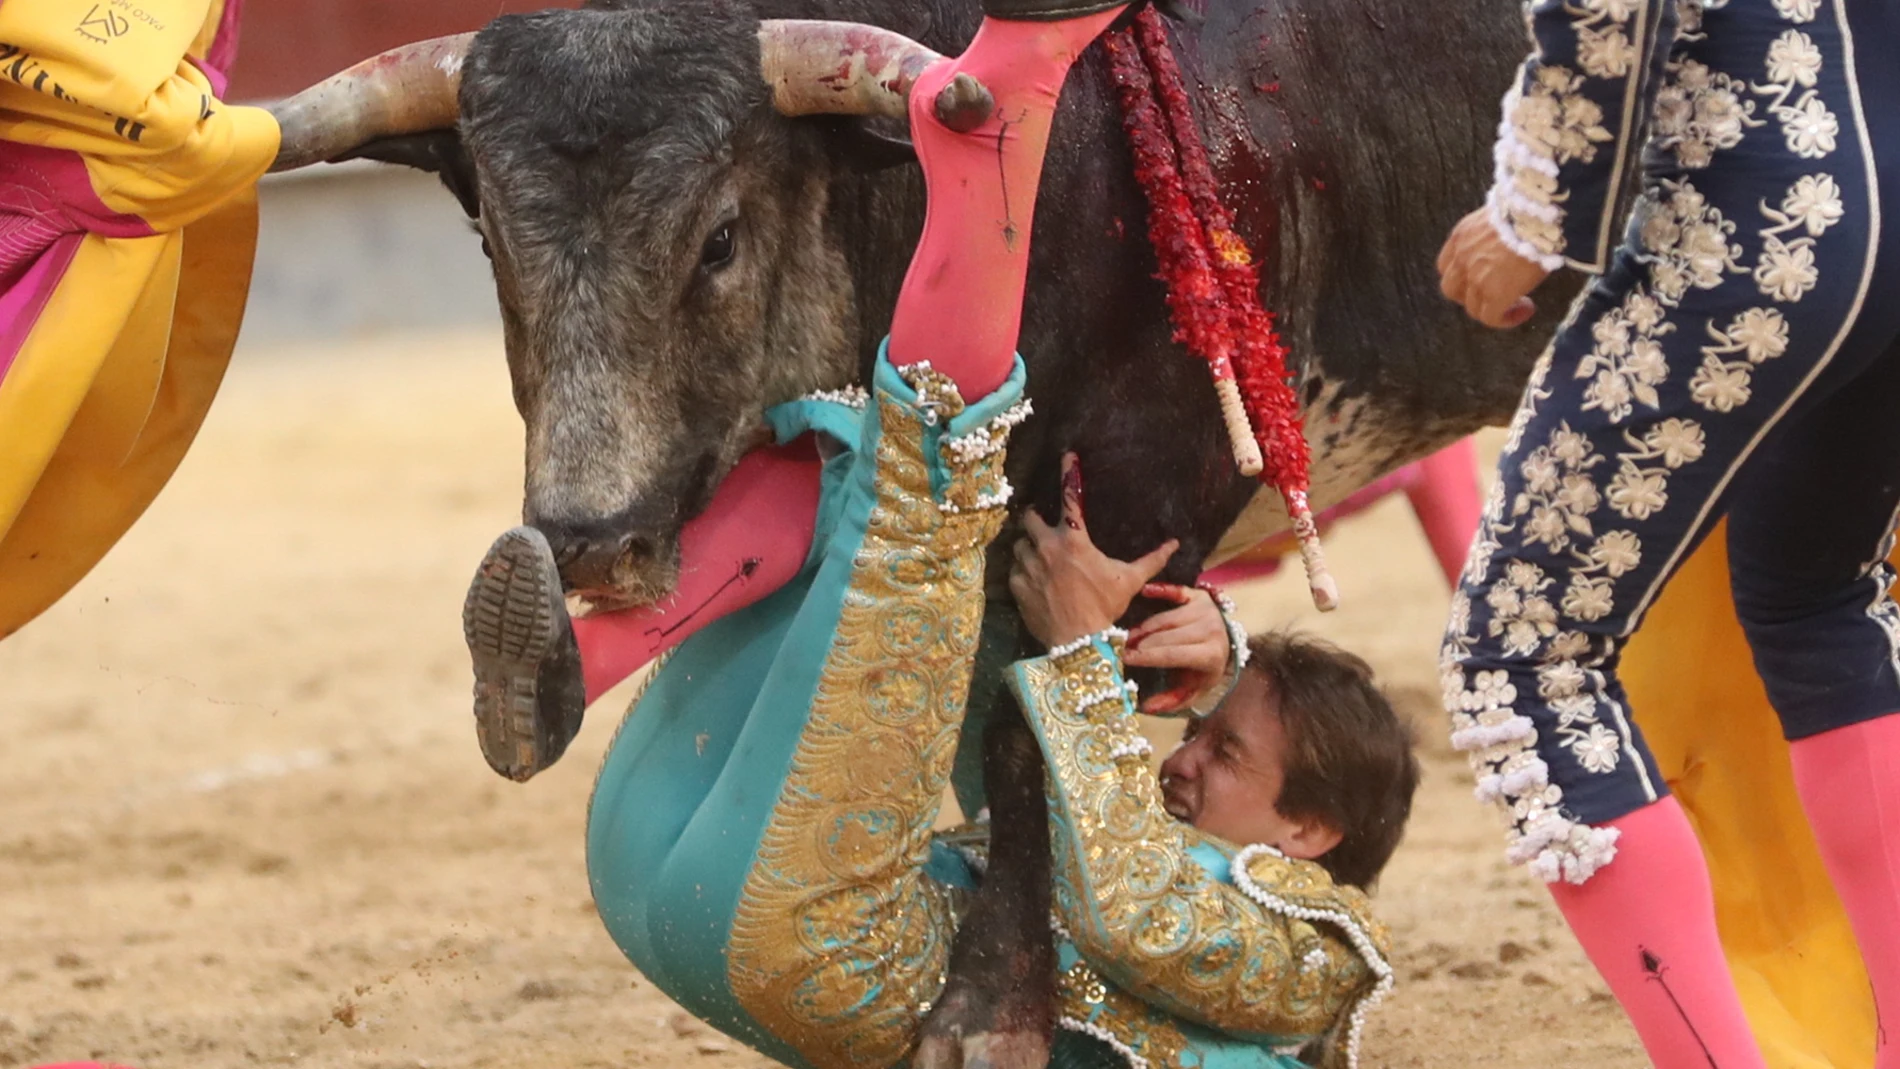 MADRID, 09/05/2022.- El novillero Arturo Gilio sufre una cogida de su segundo toro este lunes, durante la primera novillada de la Feria San Isidro 2022 en la Plaza de Las Ventas de Madrid. EFE / Miguel Osés